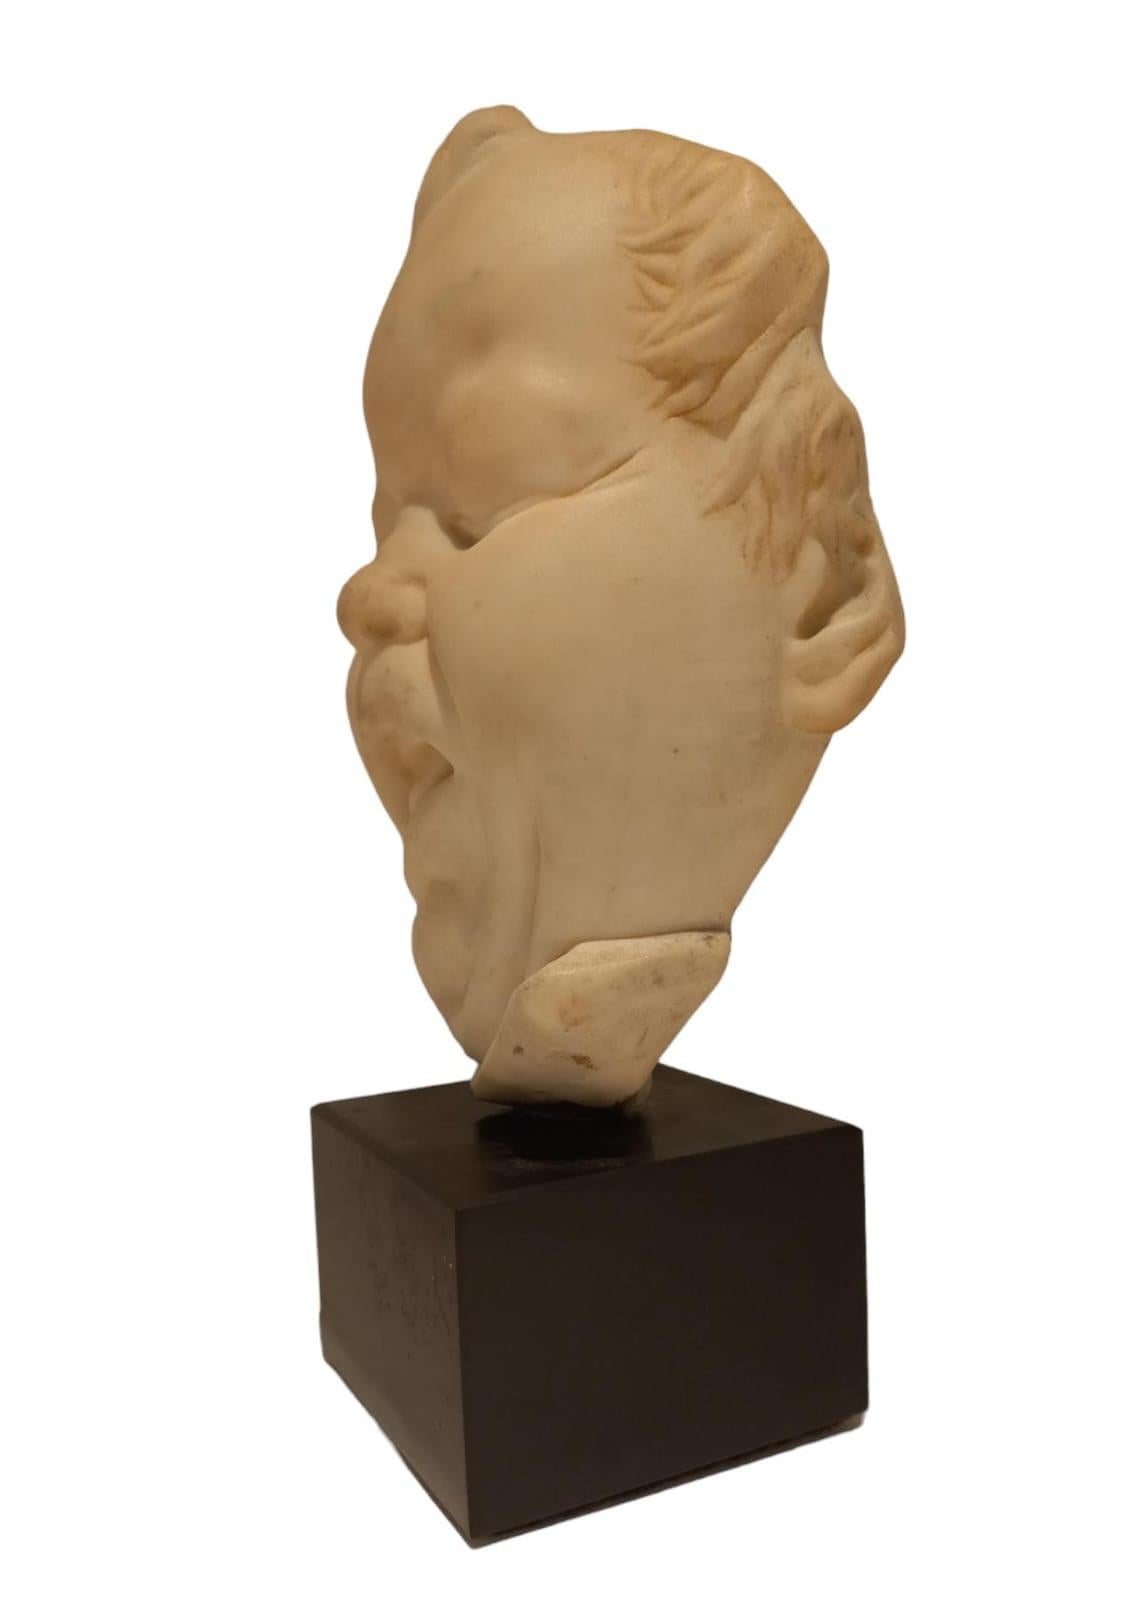 Sculpture en marbre blanc représentant un visage d'enfant avec une grimace, 19ème siècle, hauteur de la sculpture seule 23 cm, largeur 17 cm, le socle en noir de Belgique est de 7 cm de haut et a une dimension de 10x10 cm.
La sculpture n'est pas